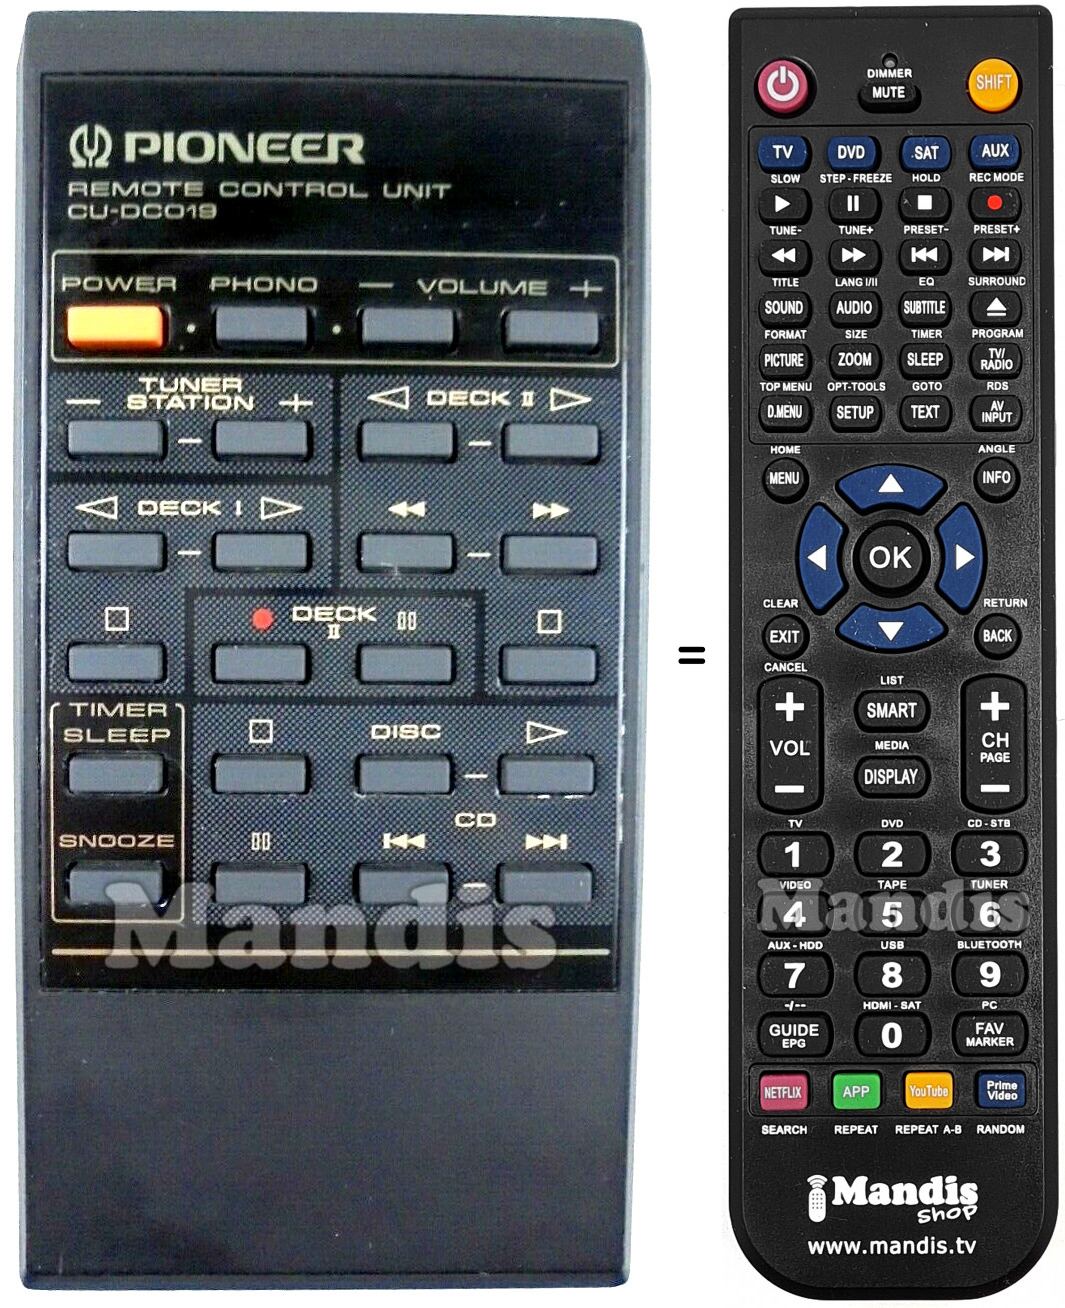 Telecomando equivalente Pioneer CU-DC019